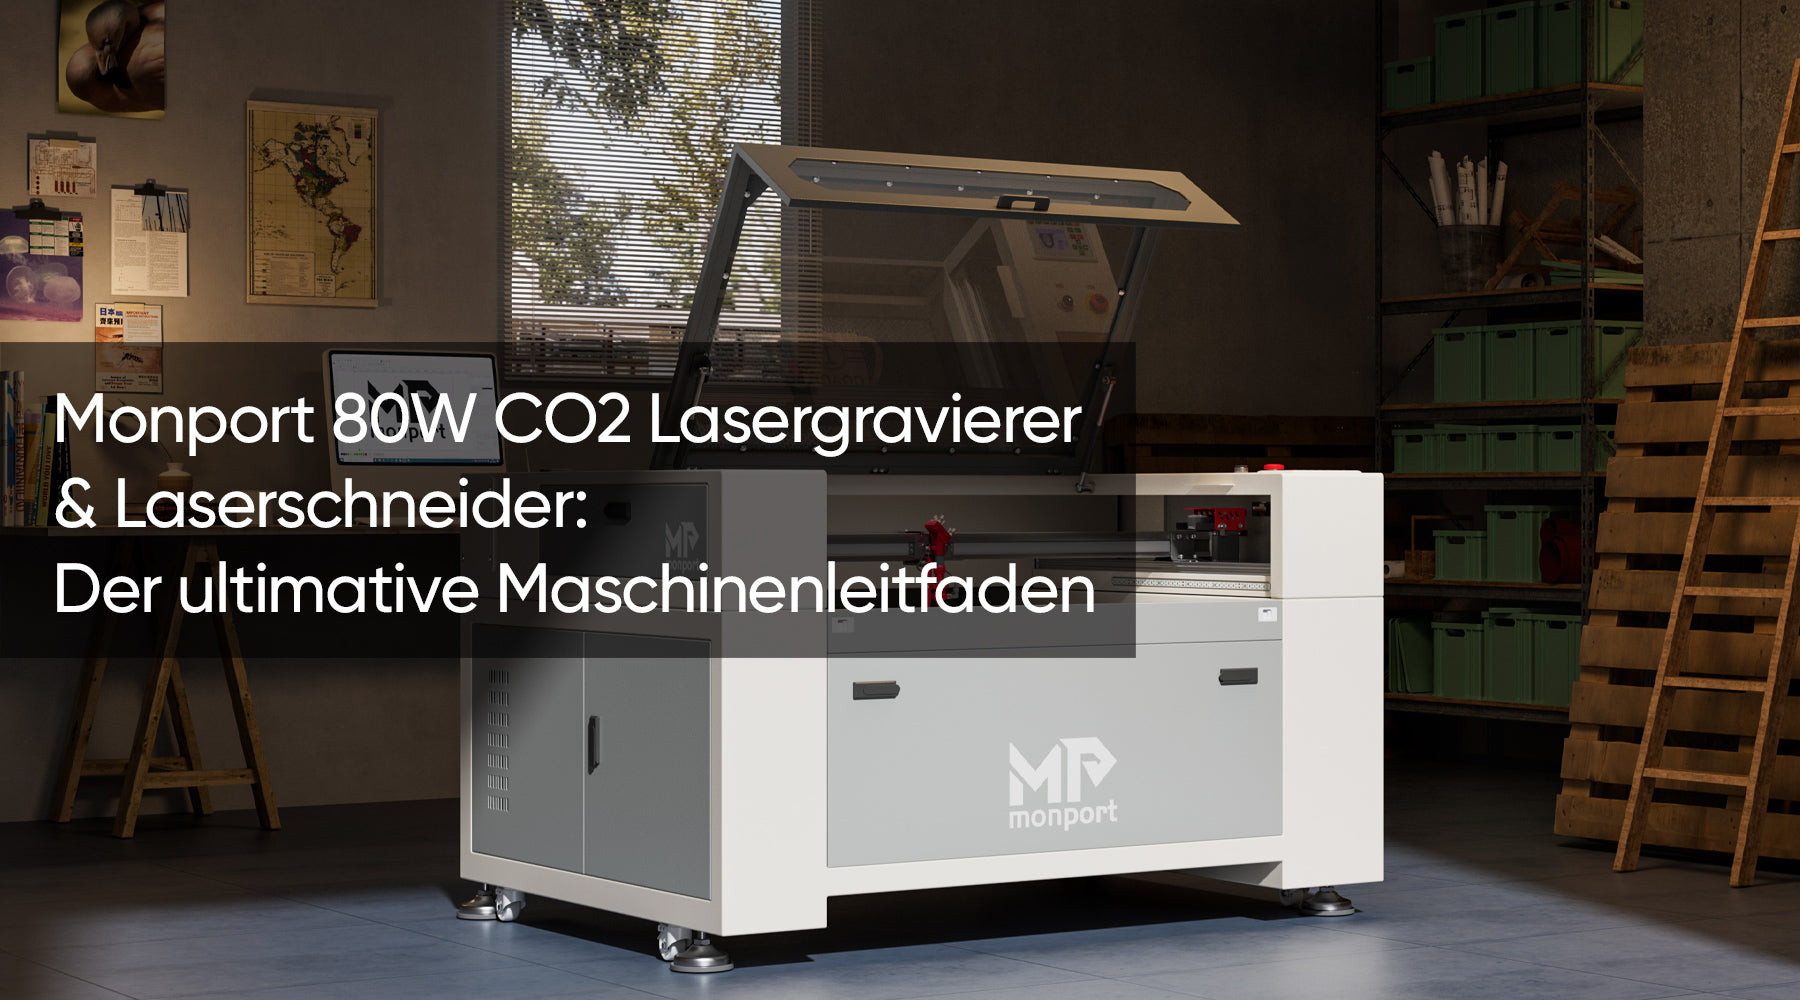 Monport 80W CO2 Lasergravierer & Laserschneider: Der ultimative Maschinenleitfaden